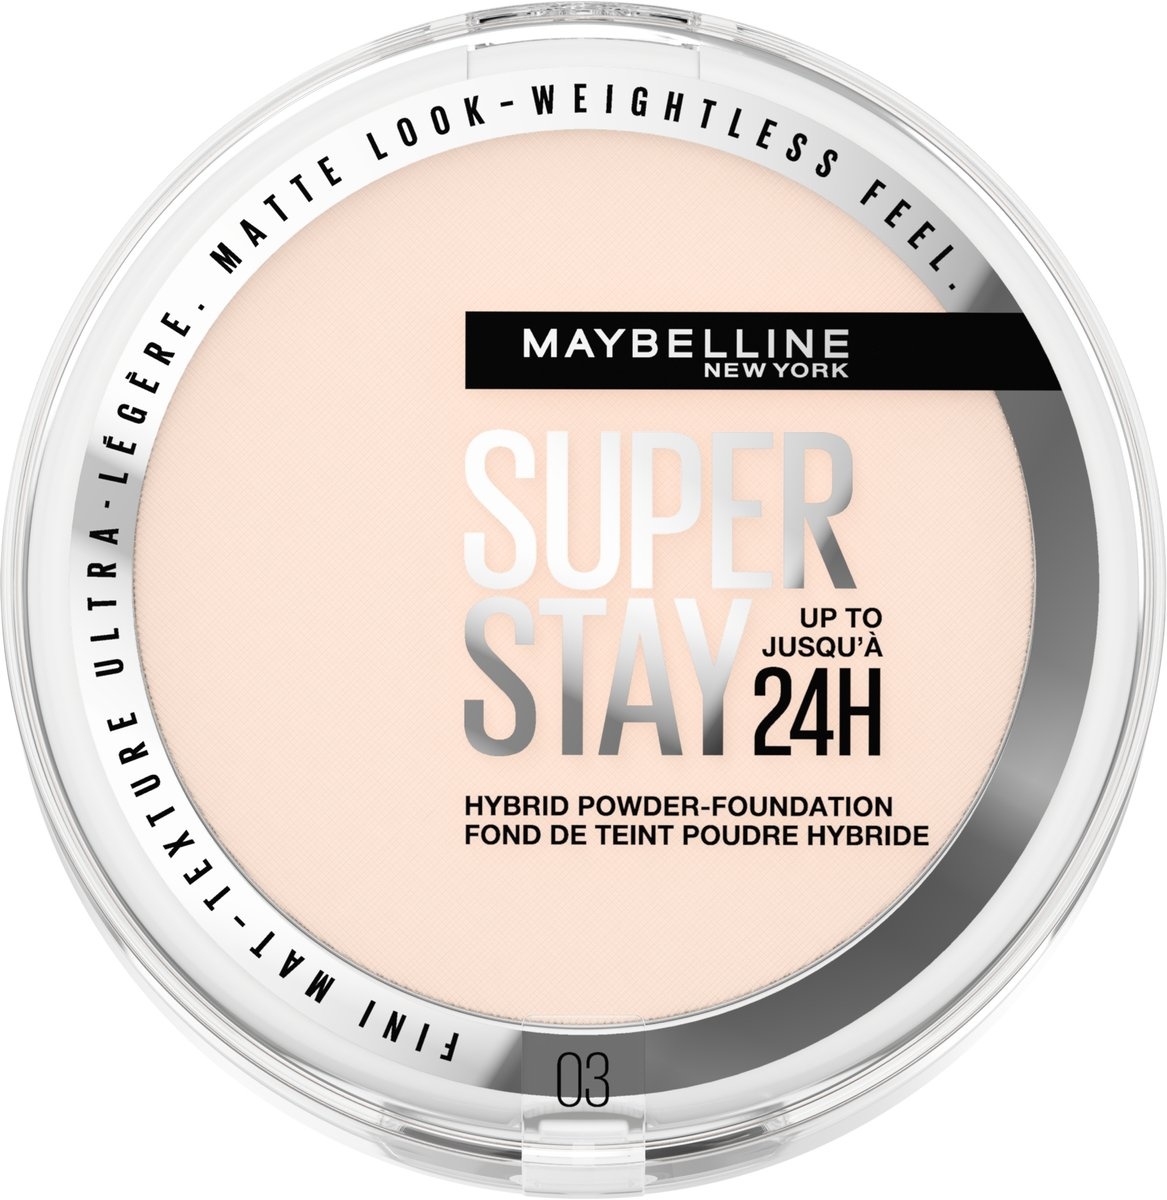 Maybelline New York - SuperStay 24H Hybrid Powder Foundation - 03